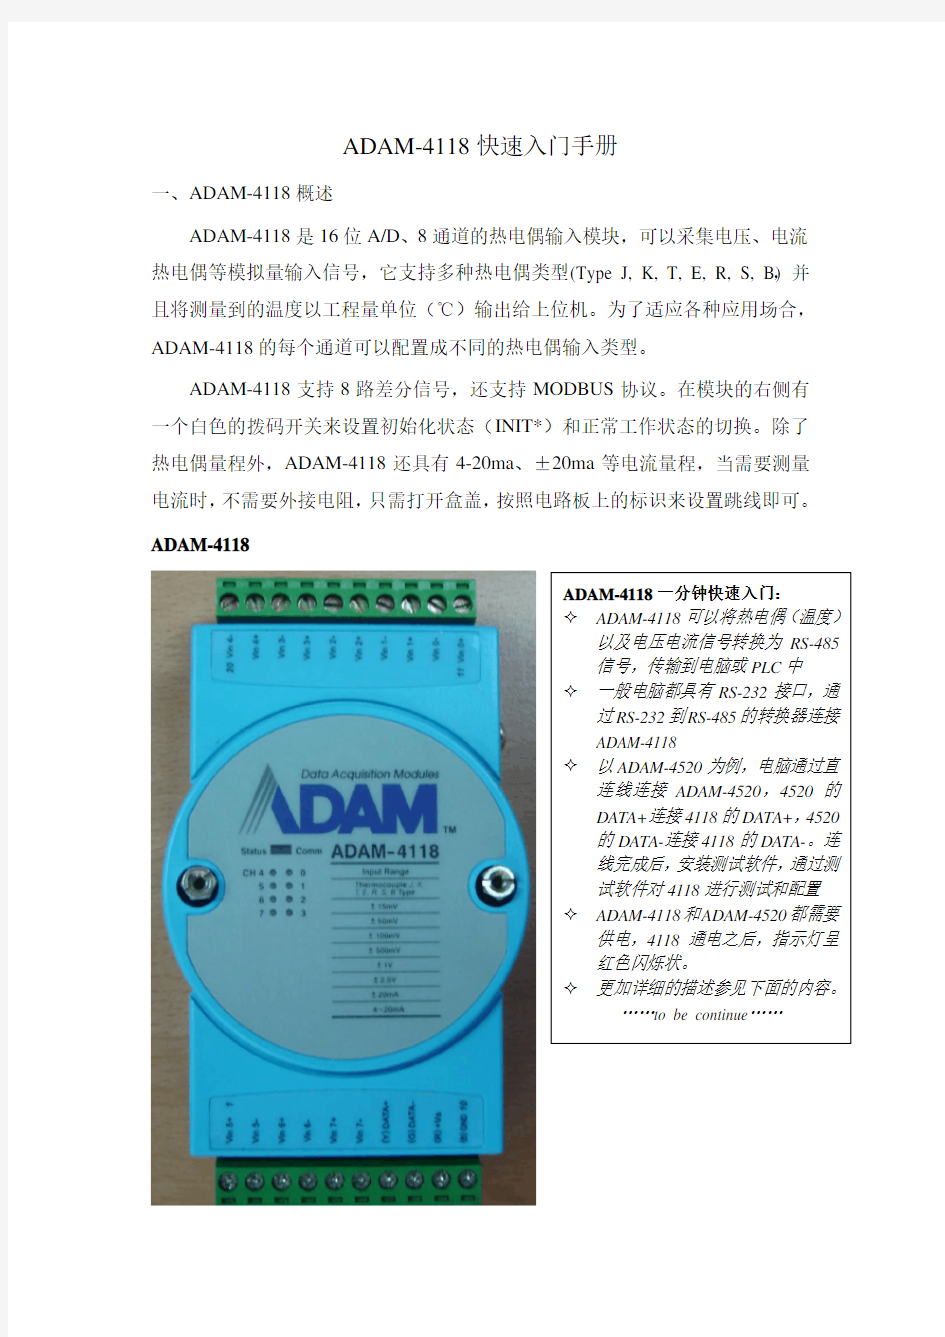 ADAM-4118快速入门手册